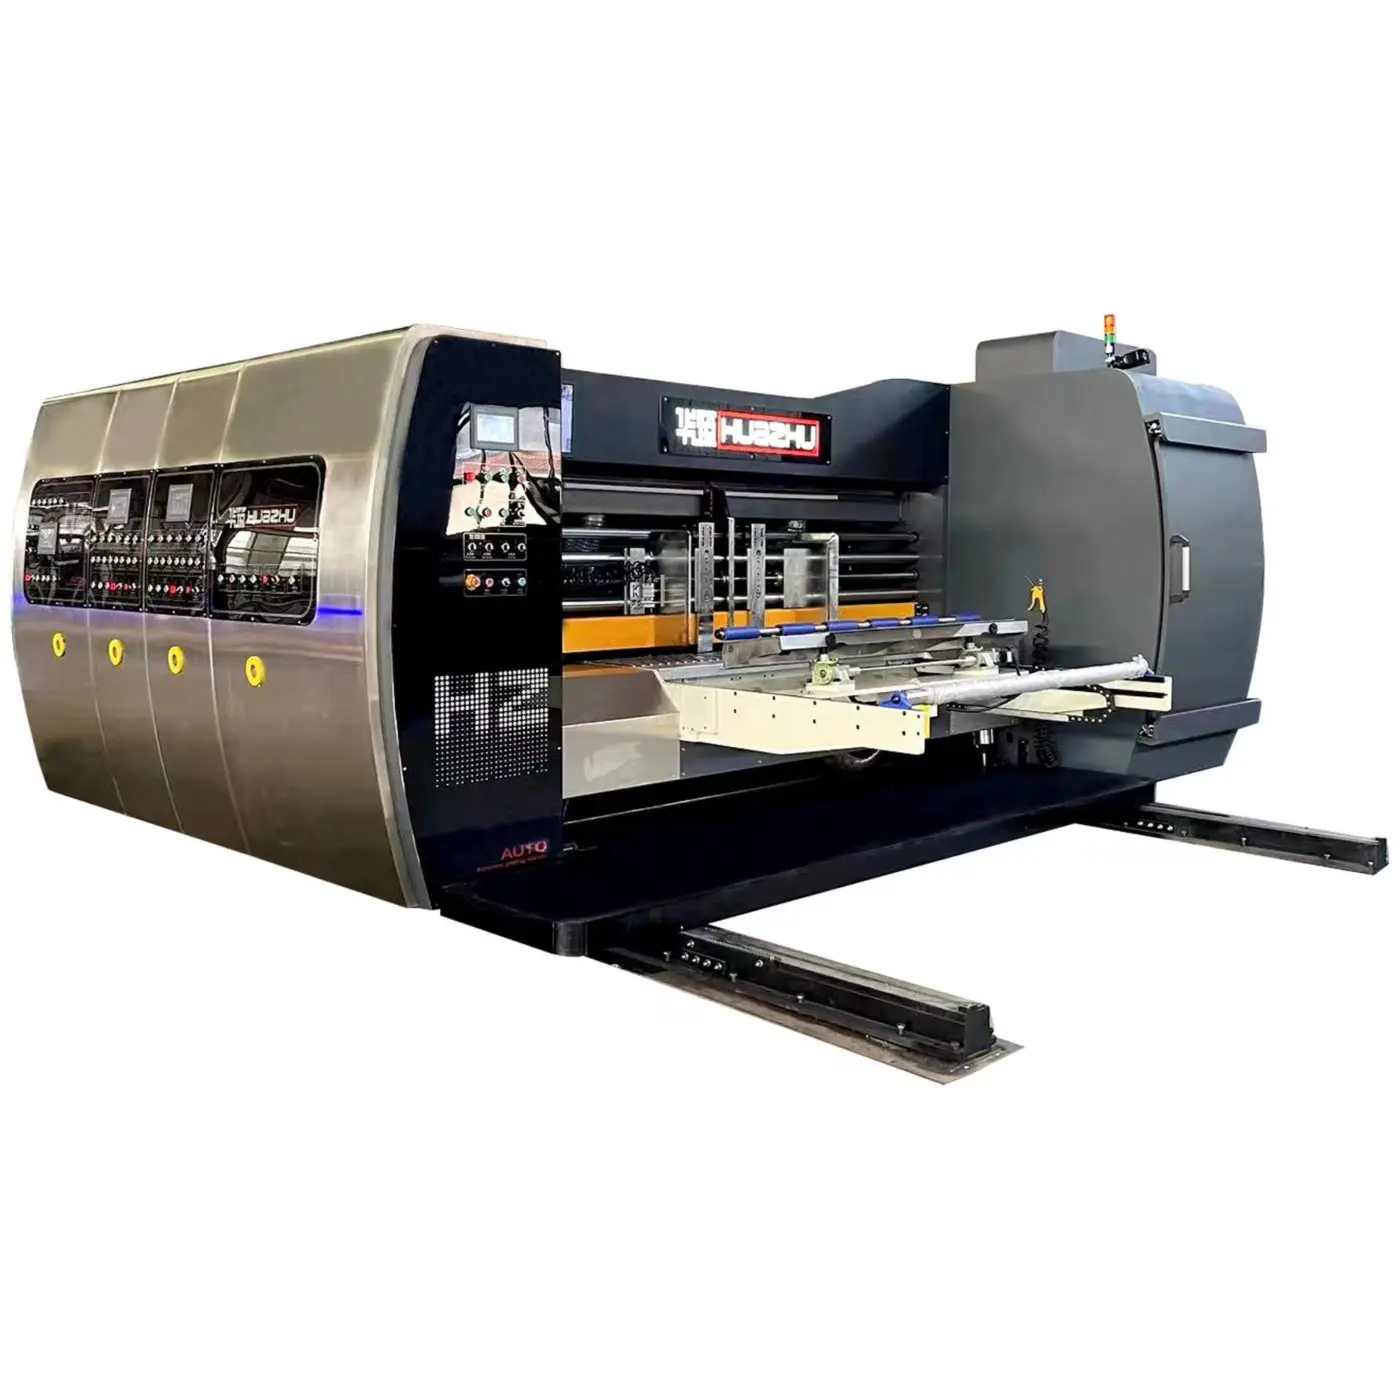 फ्लेक्सो प्रिंटिंग मशीन 4 कलर आरएस4 स्लॉटर मशीन लीड एज फीडर प्रिंटर